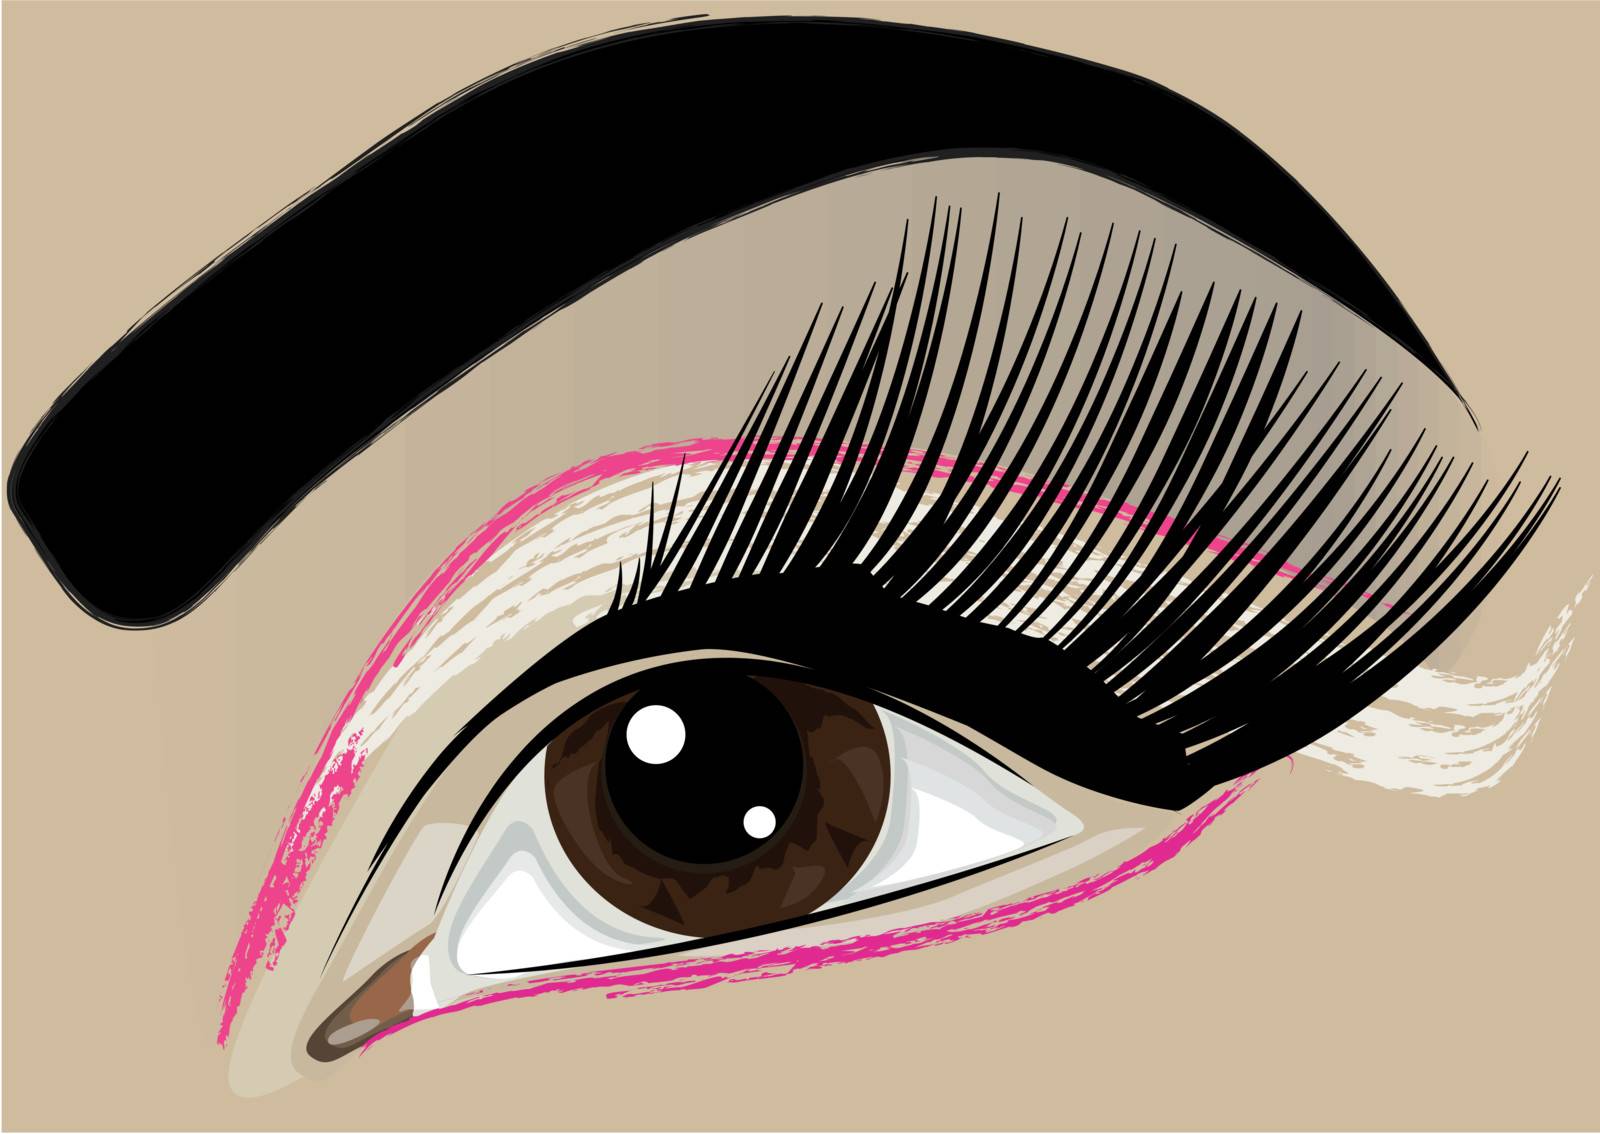 Woman make-up eye with long eyelashes